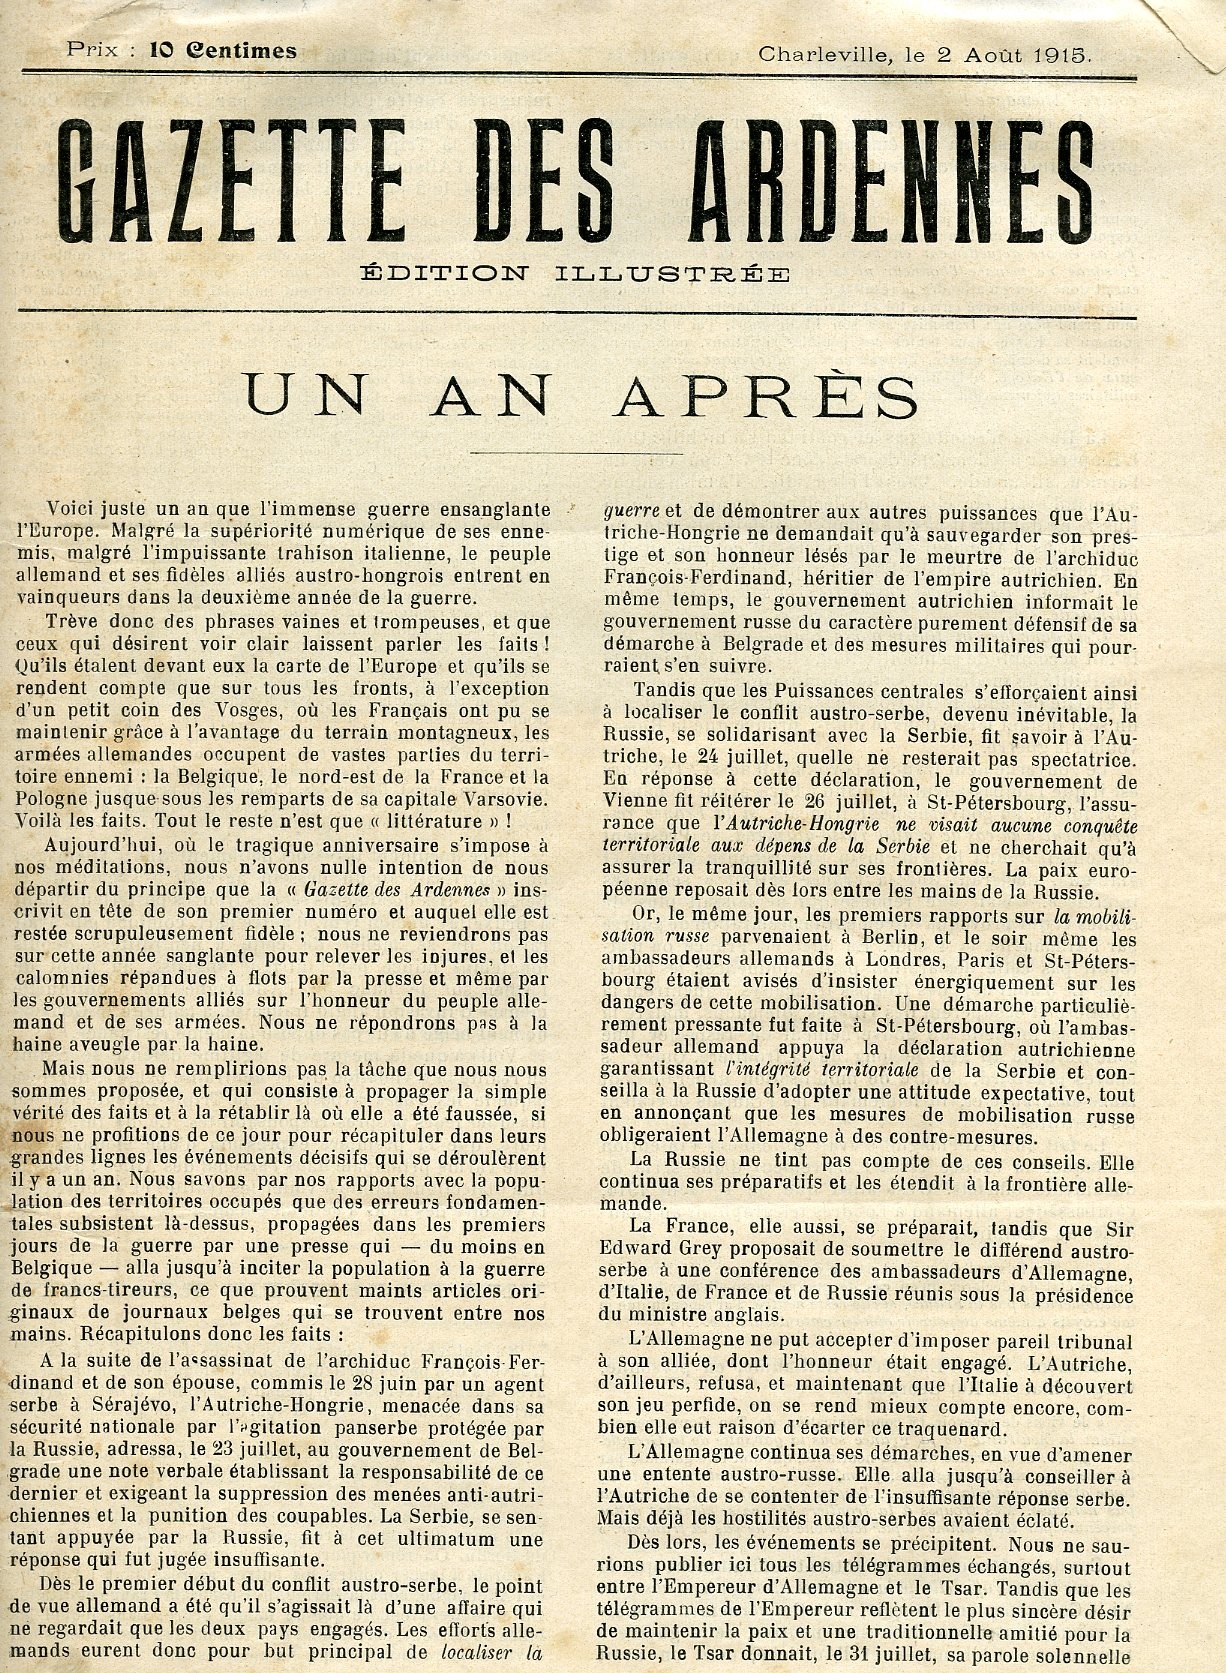 Gazette des Ardennes (Historisches Museum der Pfalz, Speyer CC BY)